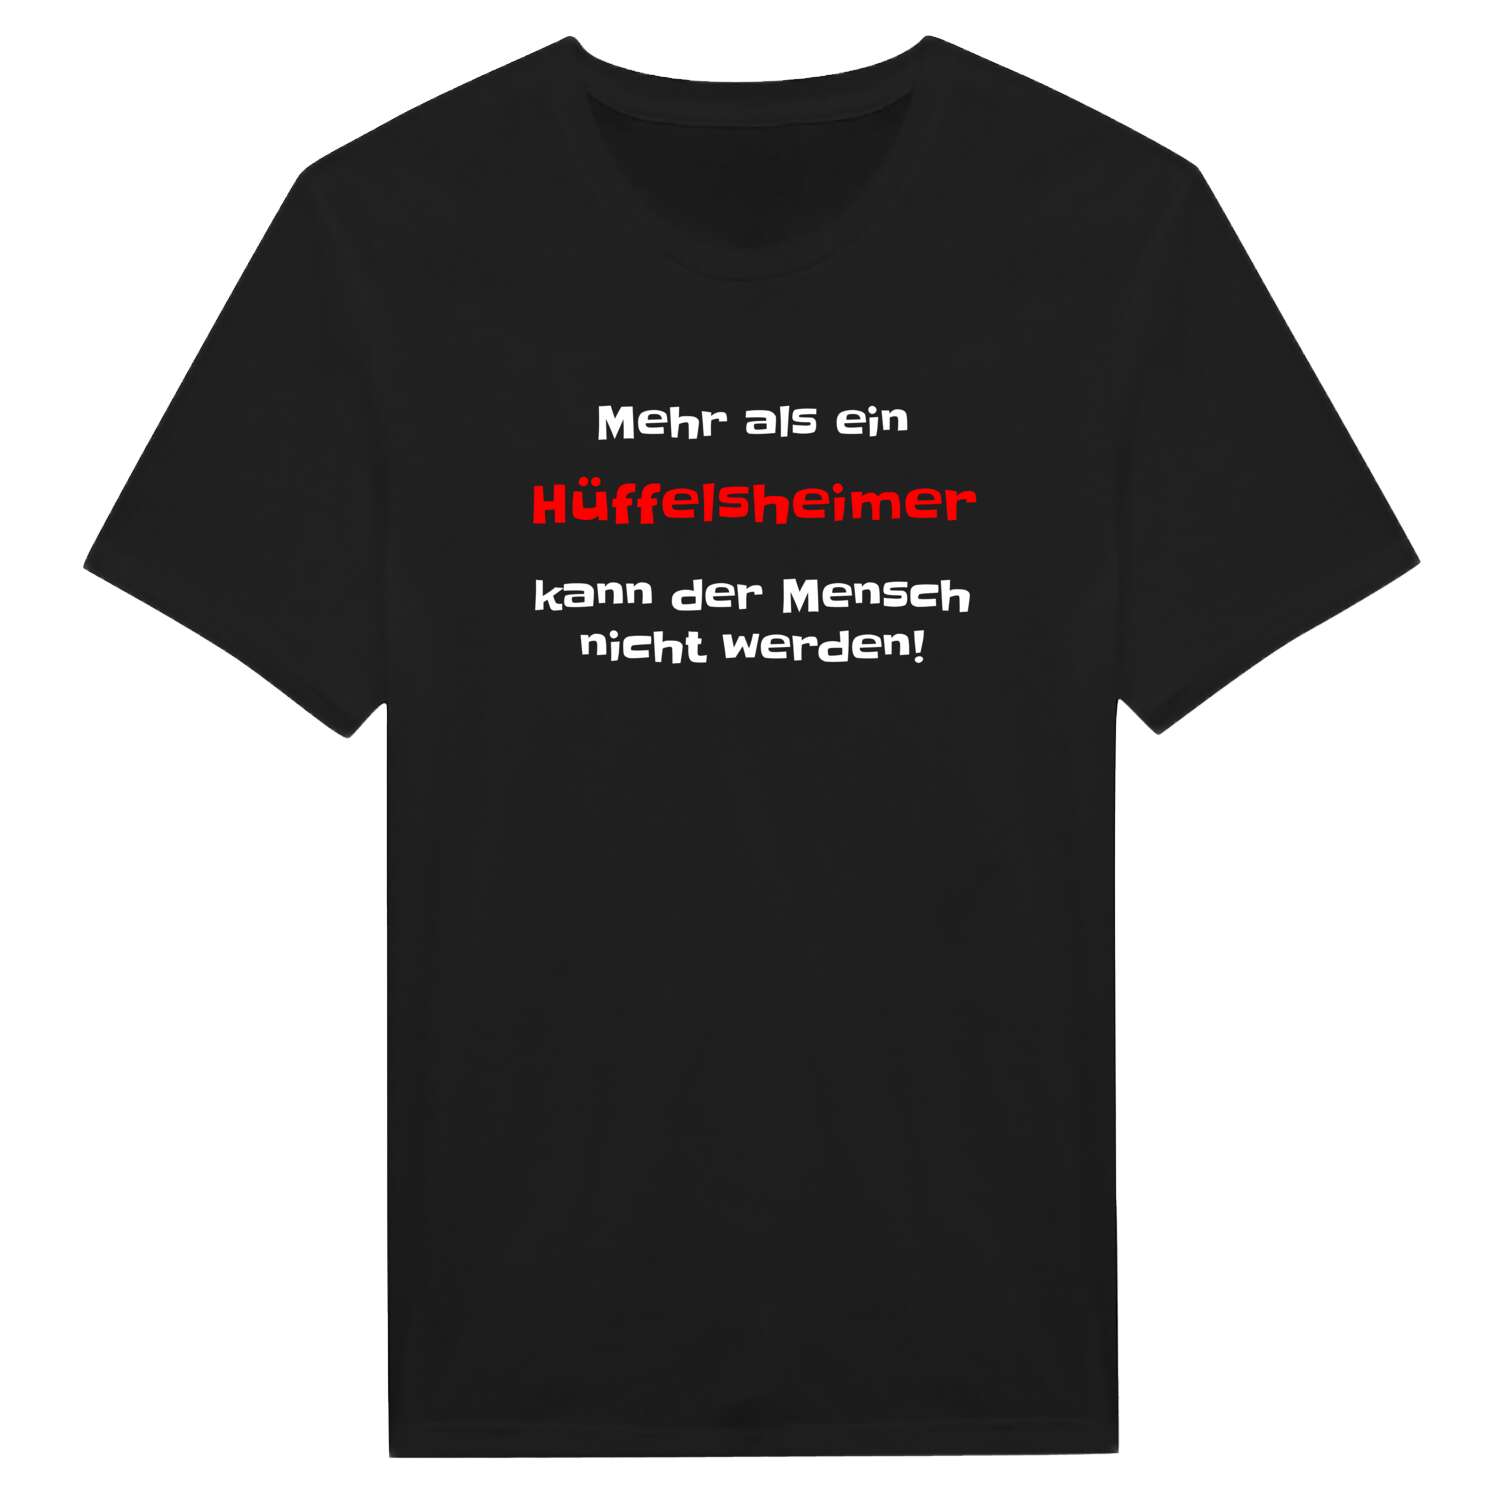 Hüffelsheim T-Shirt »Mehr als ein«